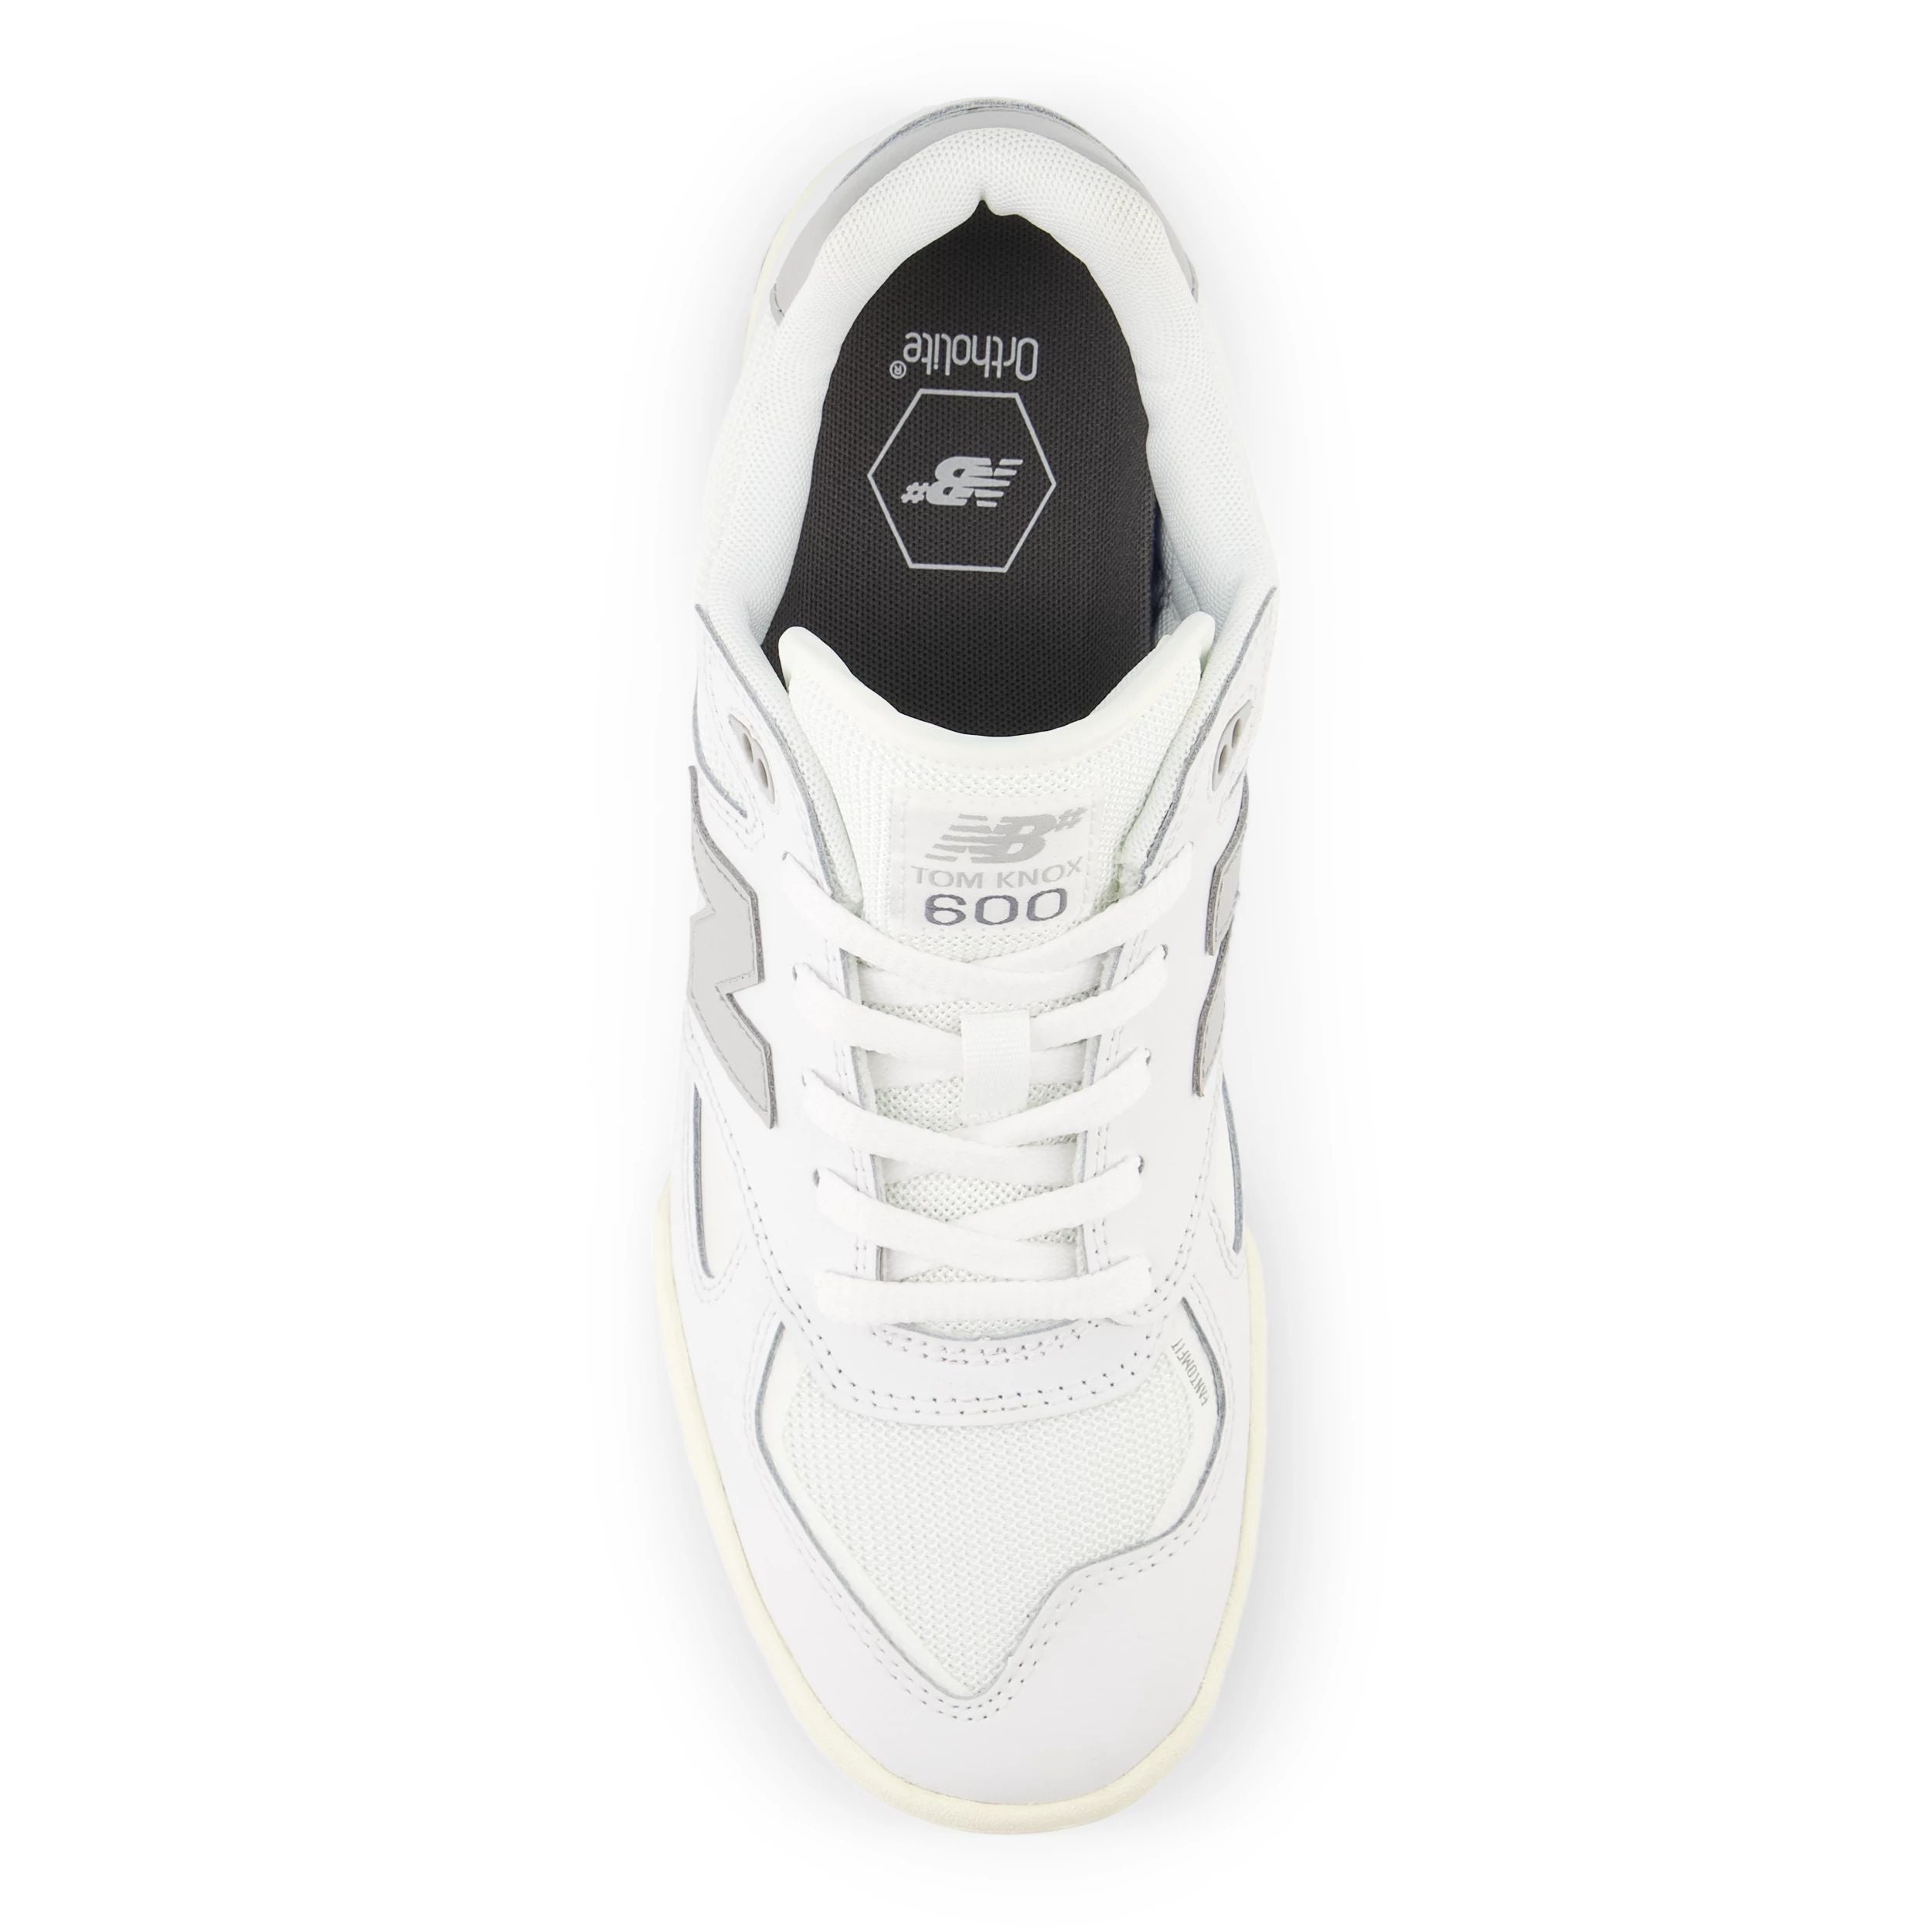 White NM600 Tom Knox NB Numeric Skate Shoe Top